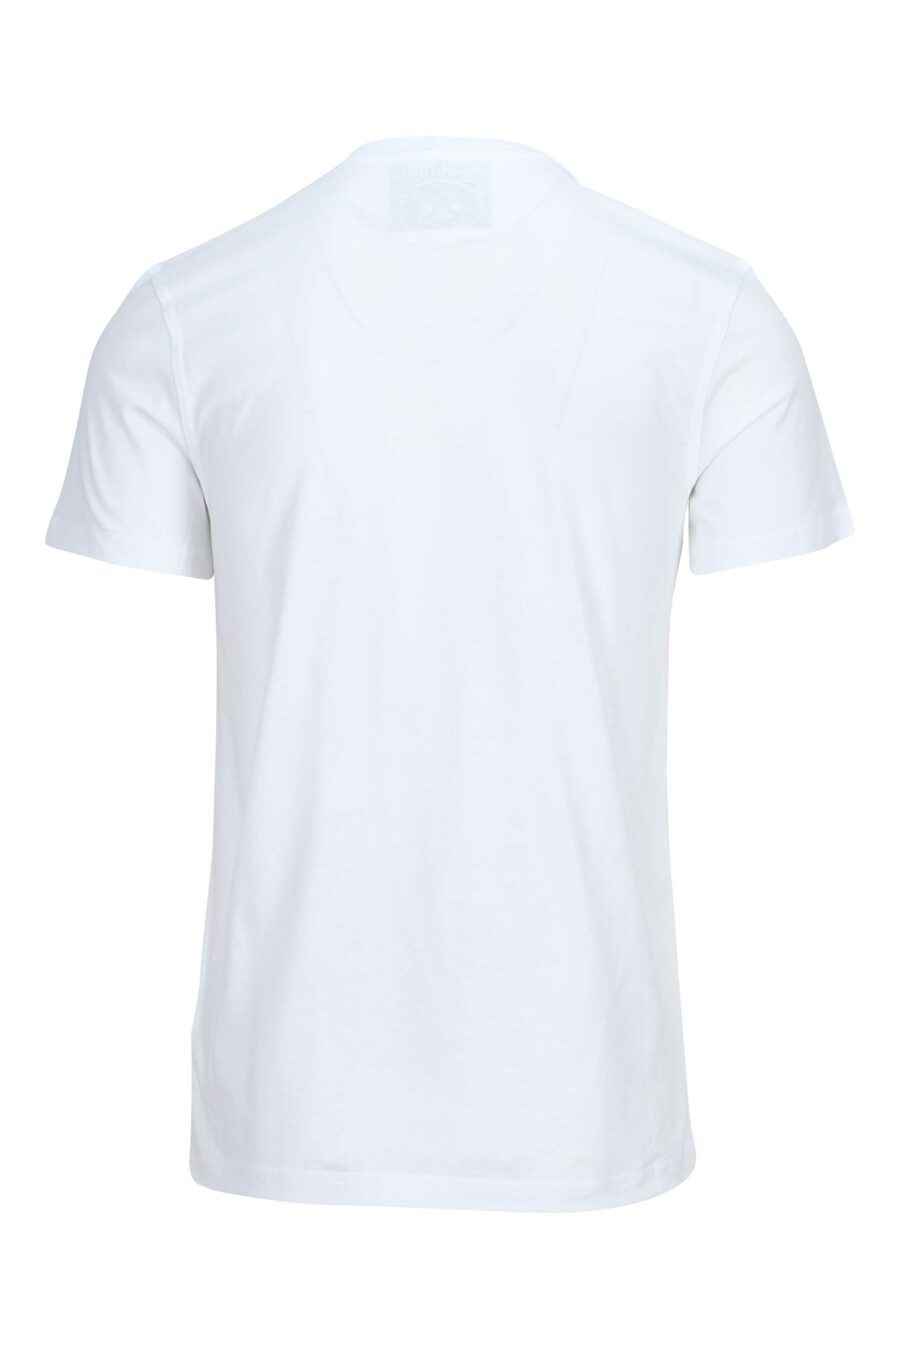 White organic cotton T-shirt with "teddy" maxilogo - 889316854503 1